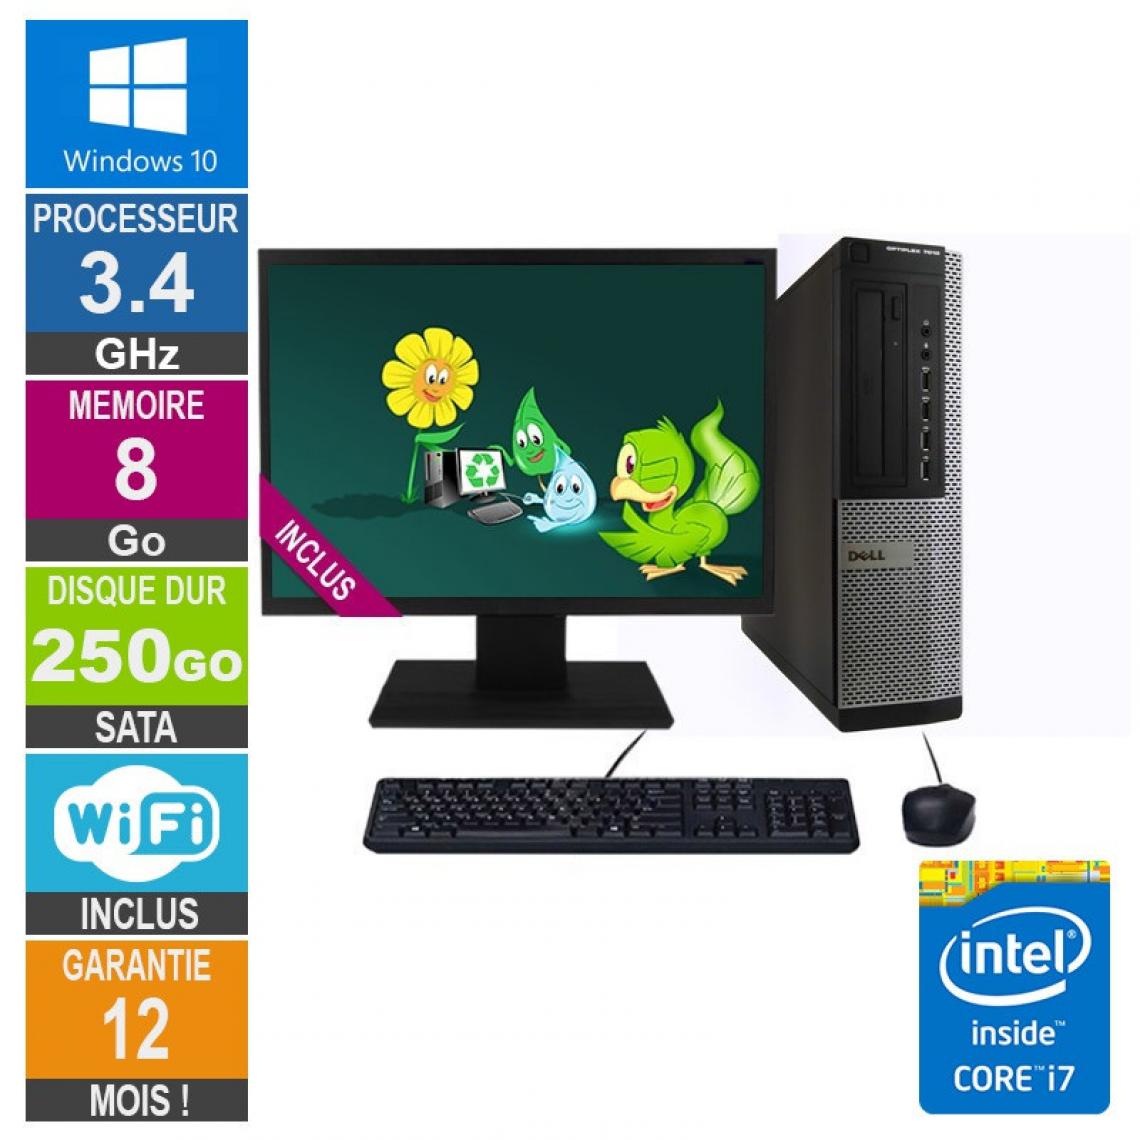 Dell - PC Dell 7010 DT Core i7-3770 3.40GHz 8Go/250Go Wifi W10 + Ecran 19 - PC Fixe